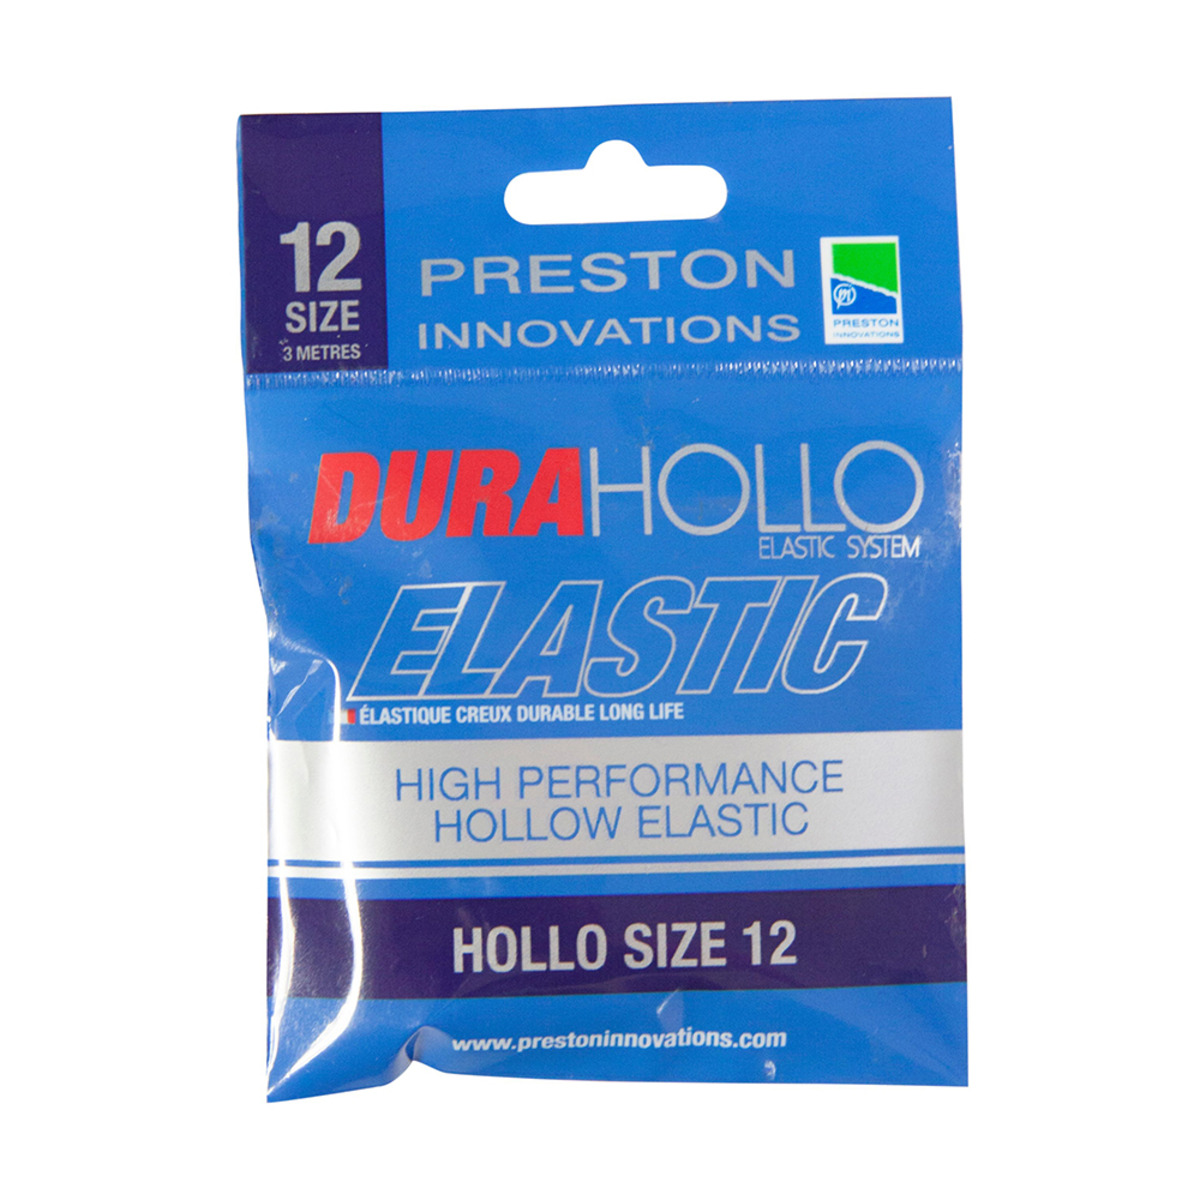 Preston Dura Hollo Elastic - Size 12